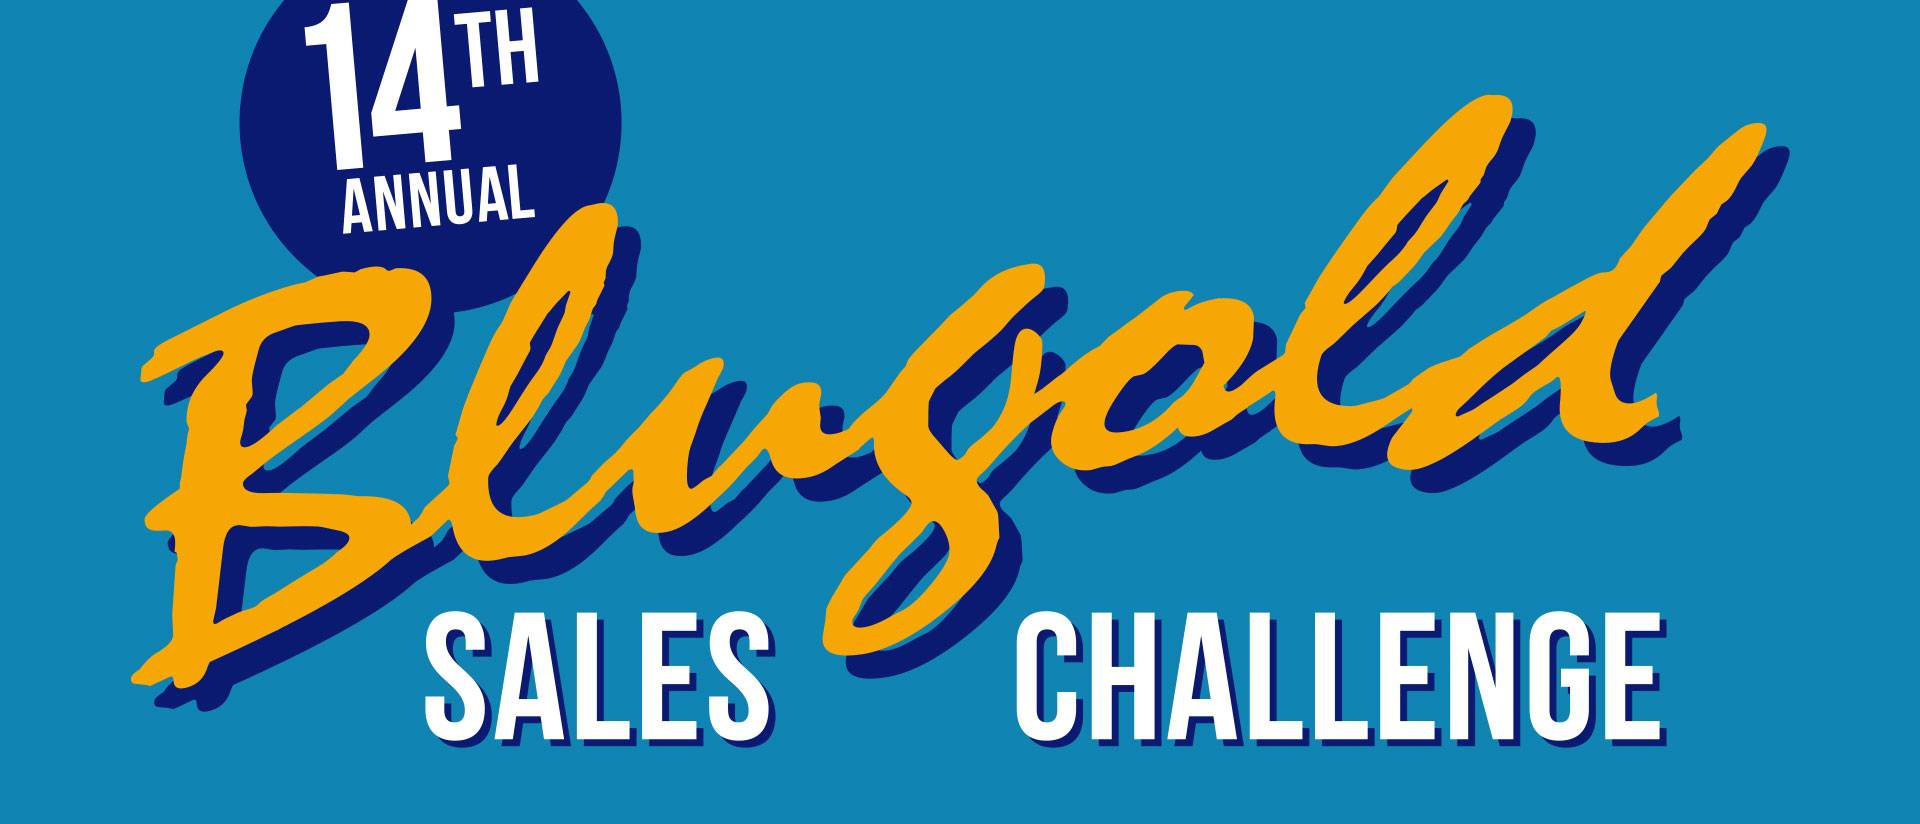 Blugold Sales Challenge graphic